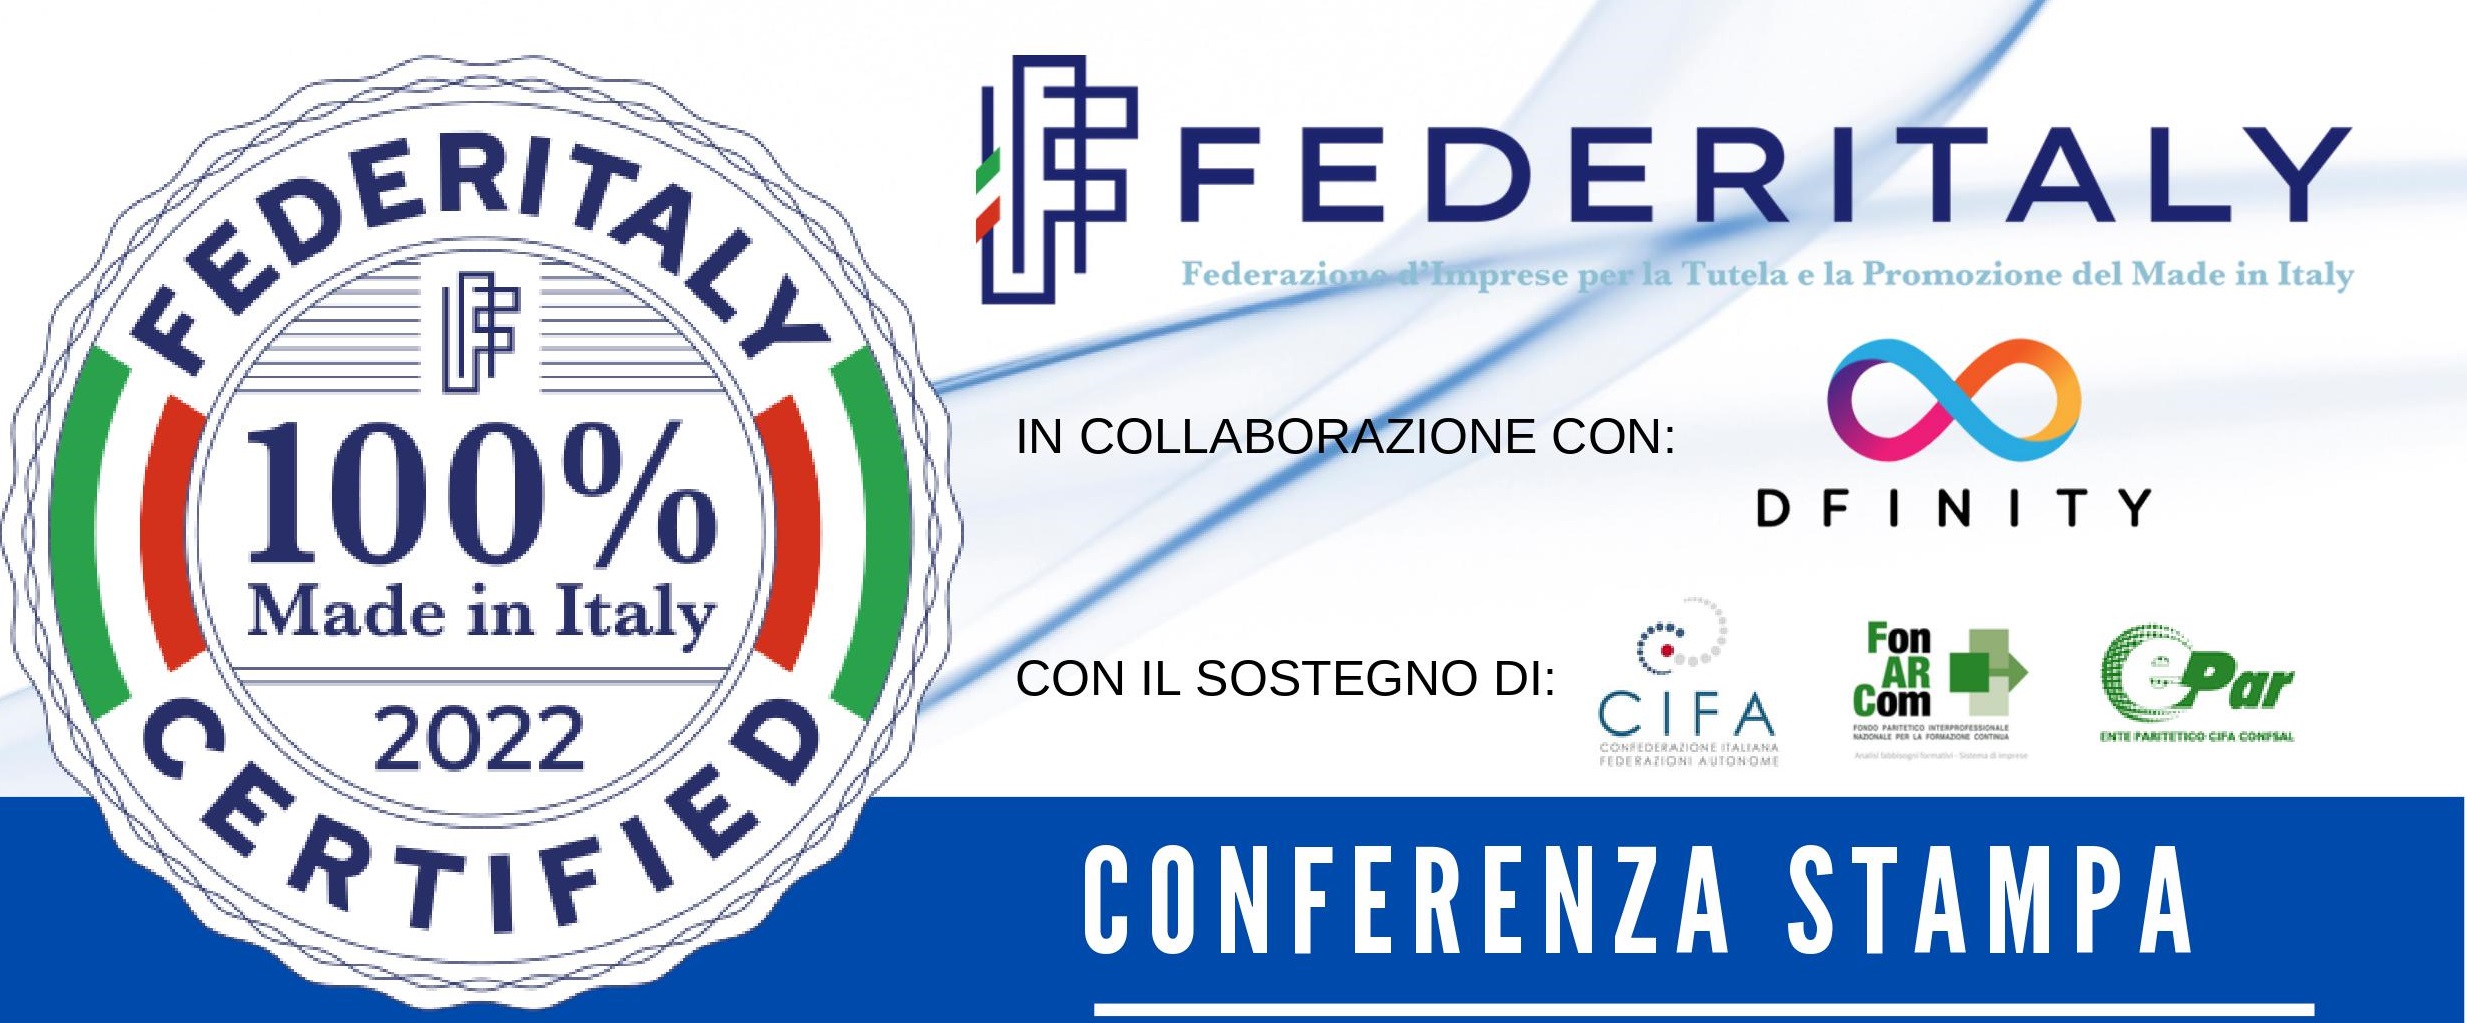 La presentazione del marchio “Federitaly 100% made in Italy” e la partnership con il la Fondazione Dfinity